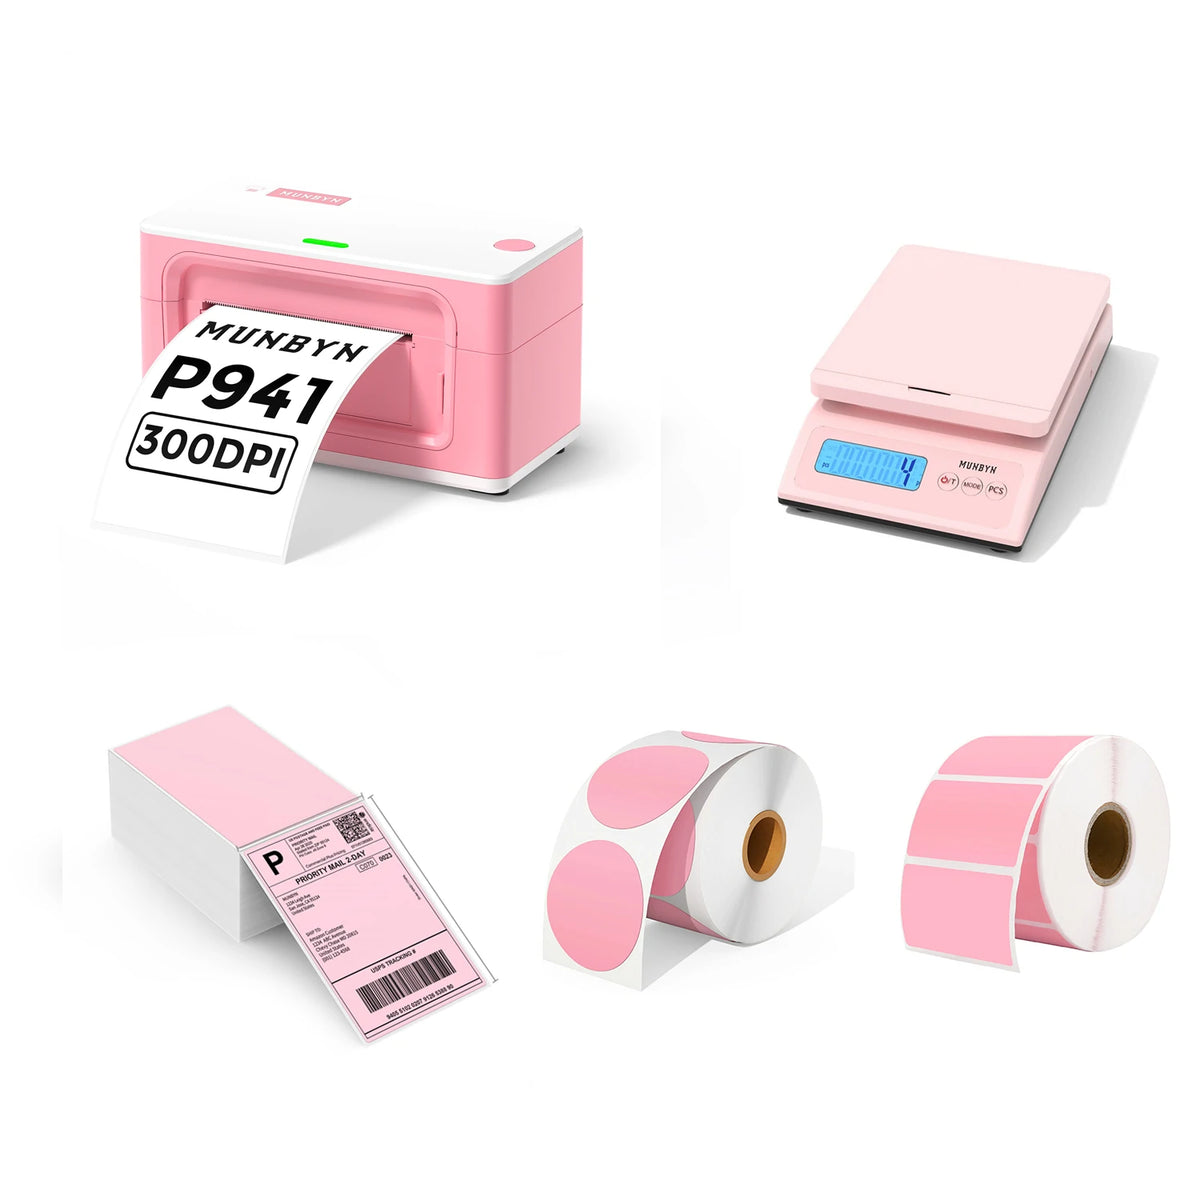 MUNBYN 4x6 USB Thermal Shipping Label Printer P941 Pro Starter Kit Full Set | Pink